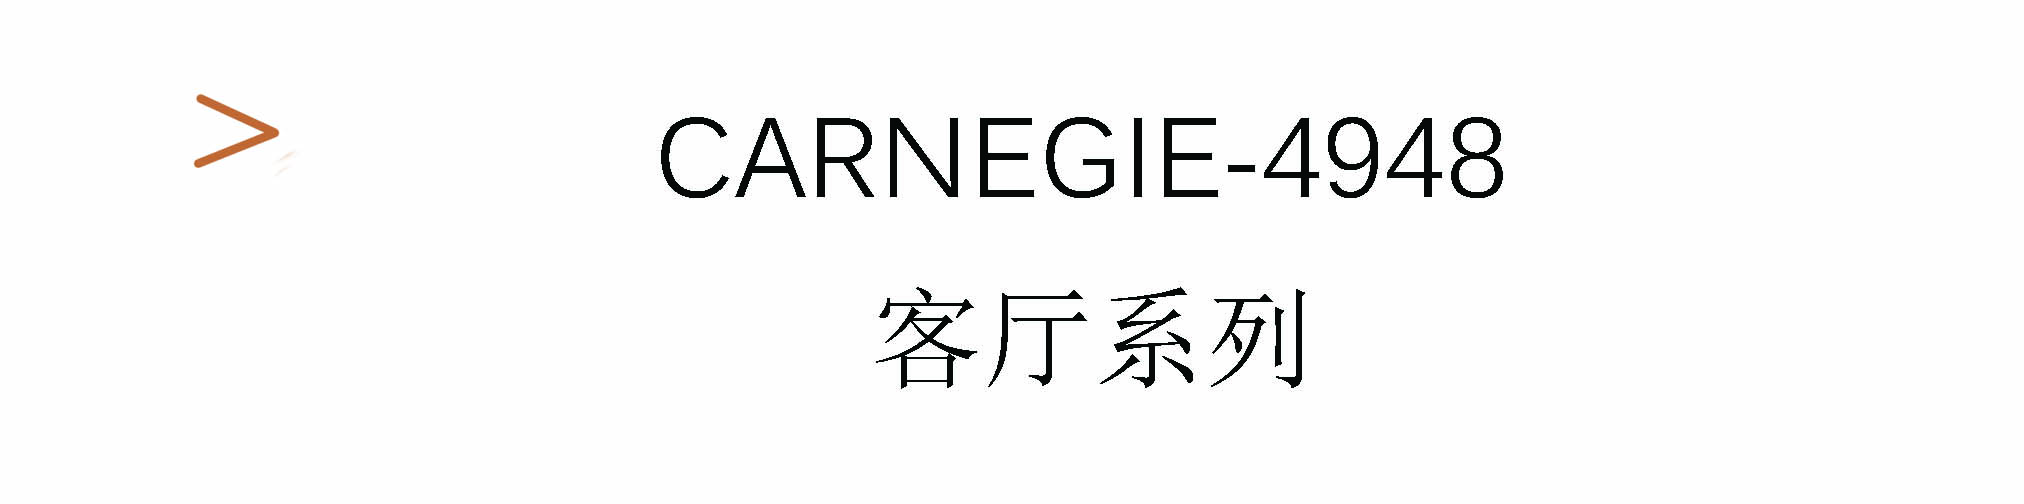 Carnegie-4948